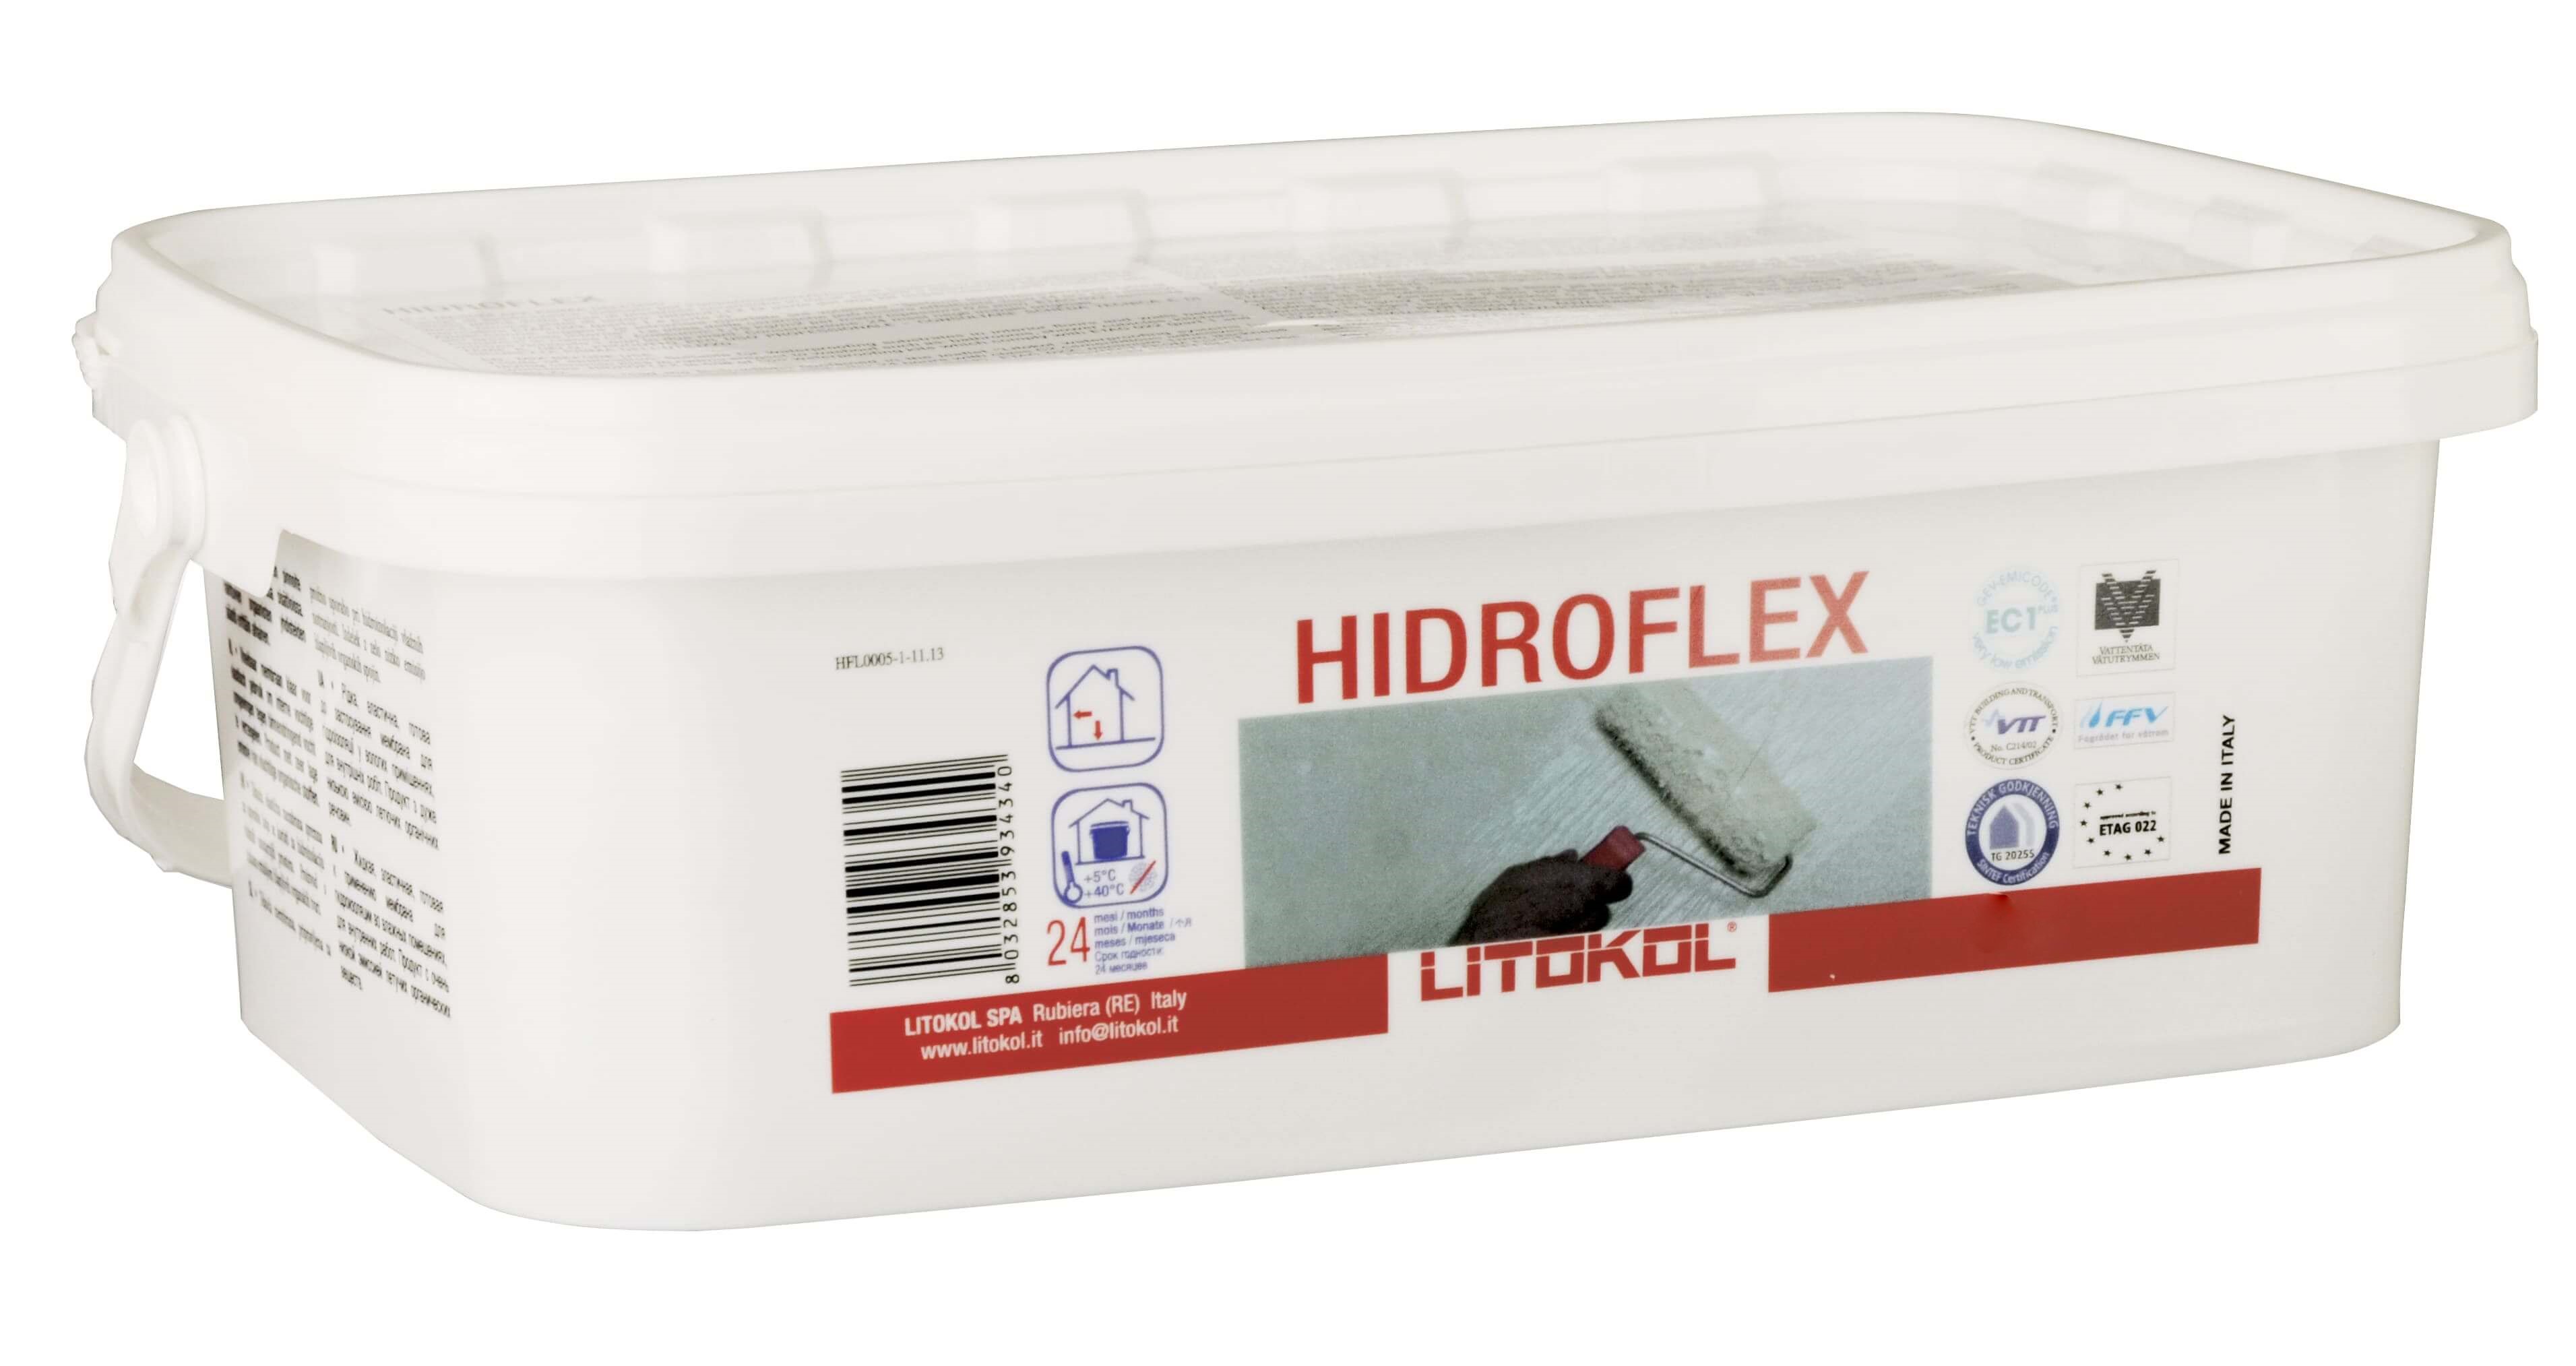 Гидроизоляция литокол. Гидроизоляция Litokol Hidroflex. Гидроизоляция Hidroflex 5кг Litokol. Гидроизоляционная мастика Hidroflex, 10 кг.. Мастика Litokol Hidroflex-Гидроизол, 10 кг.